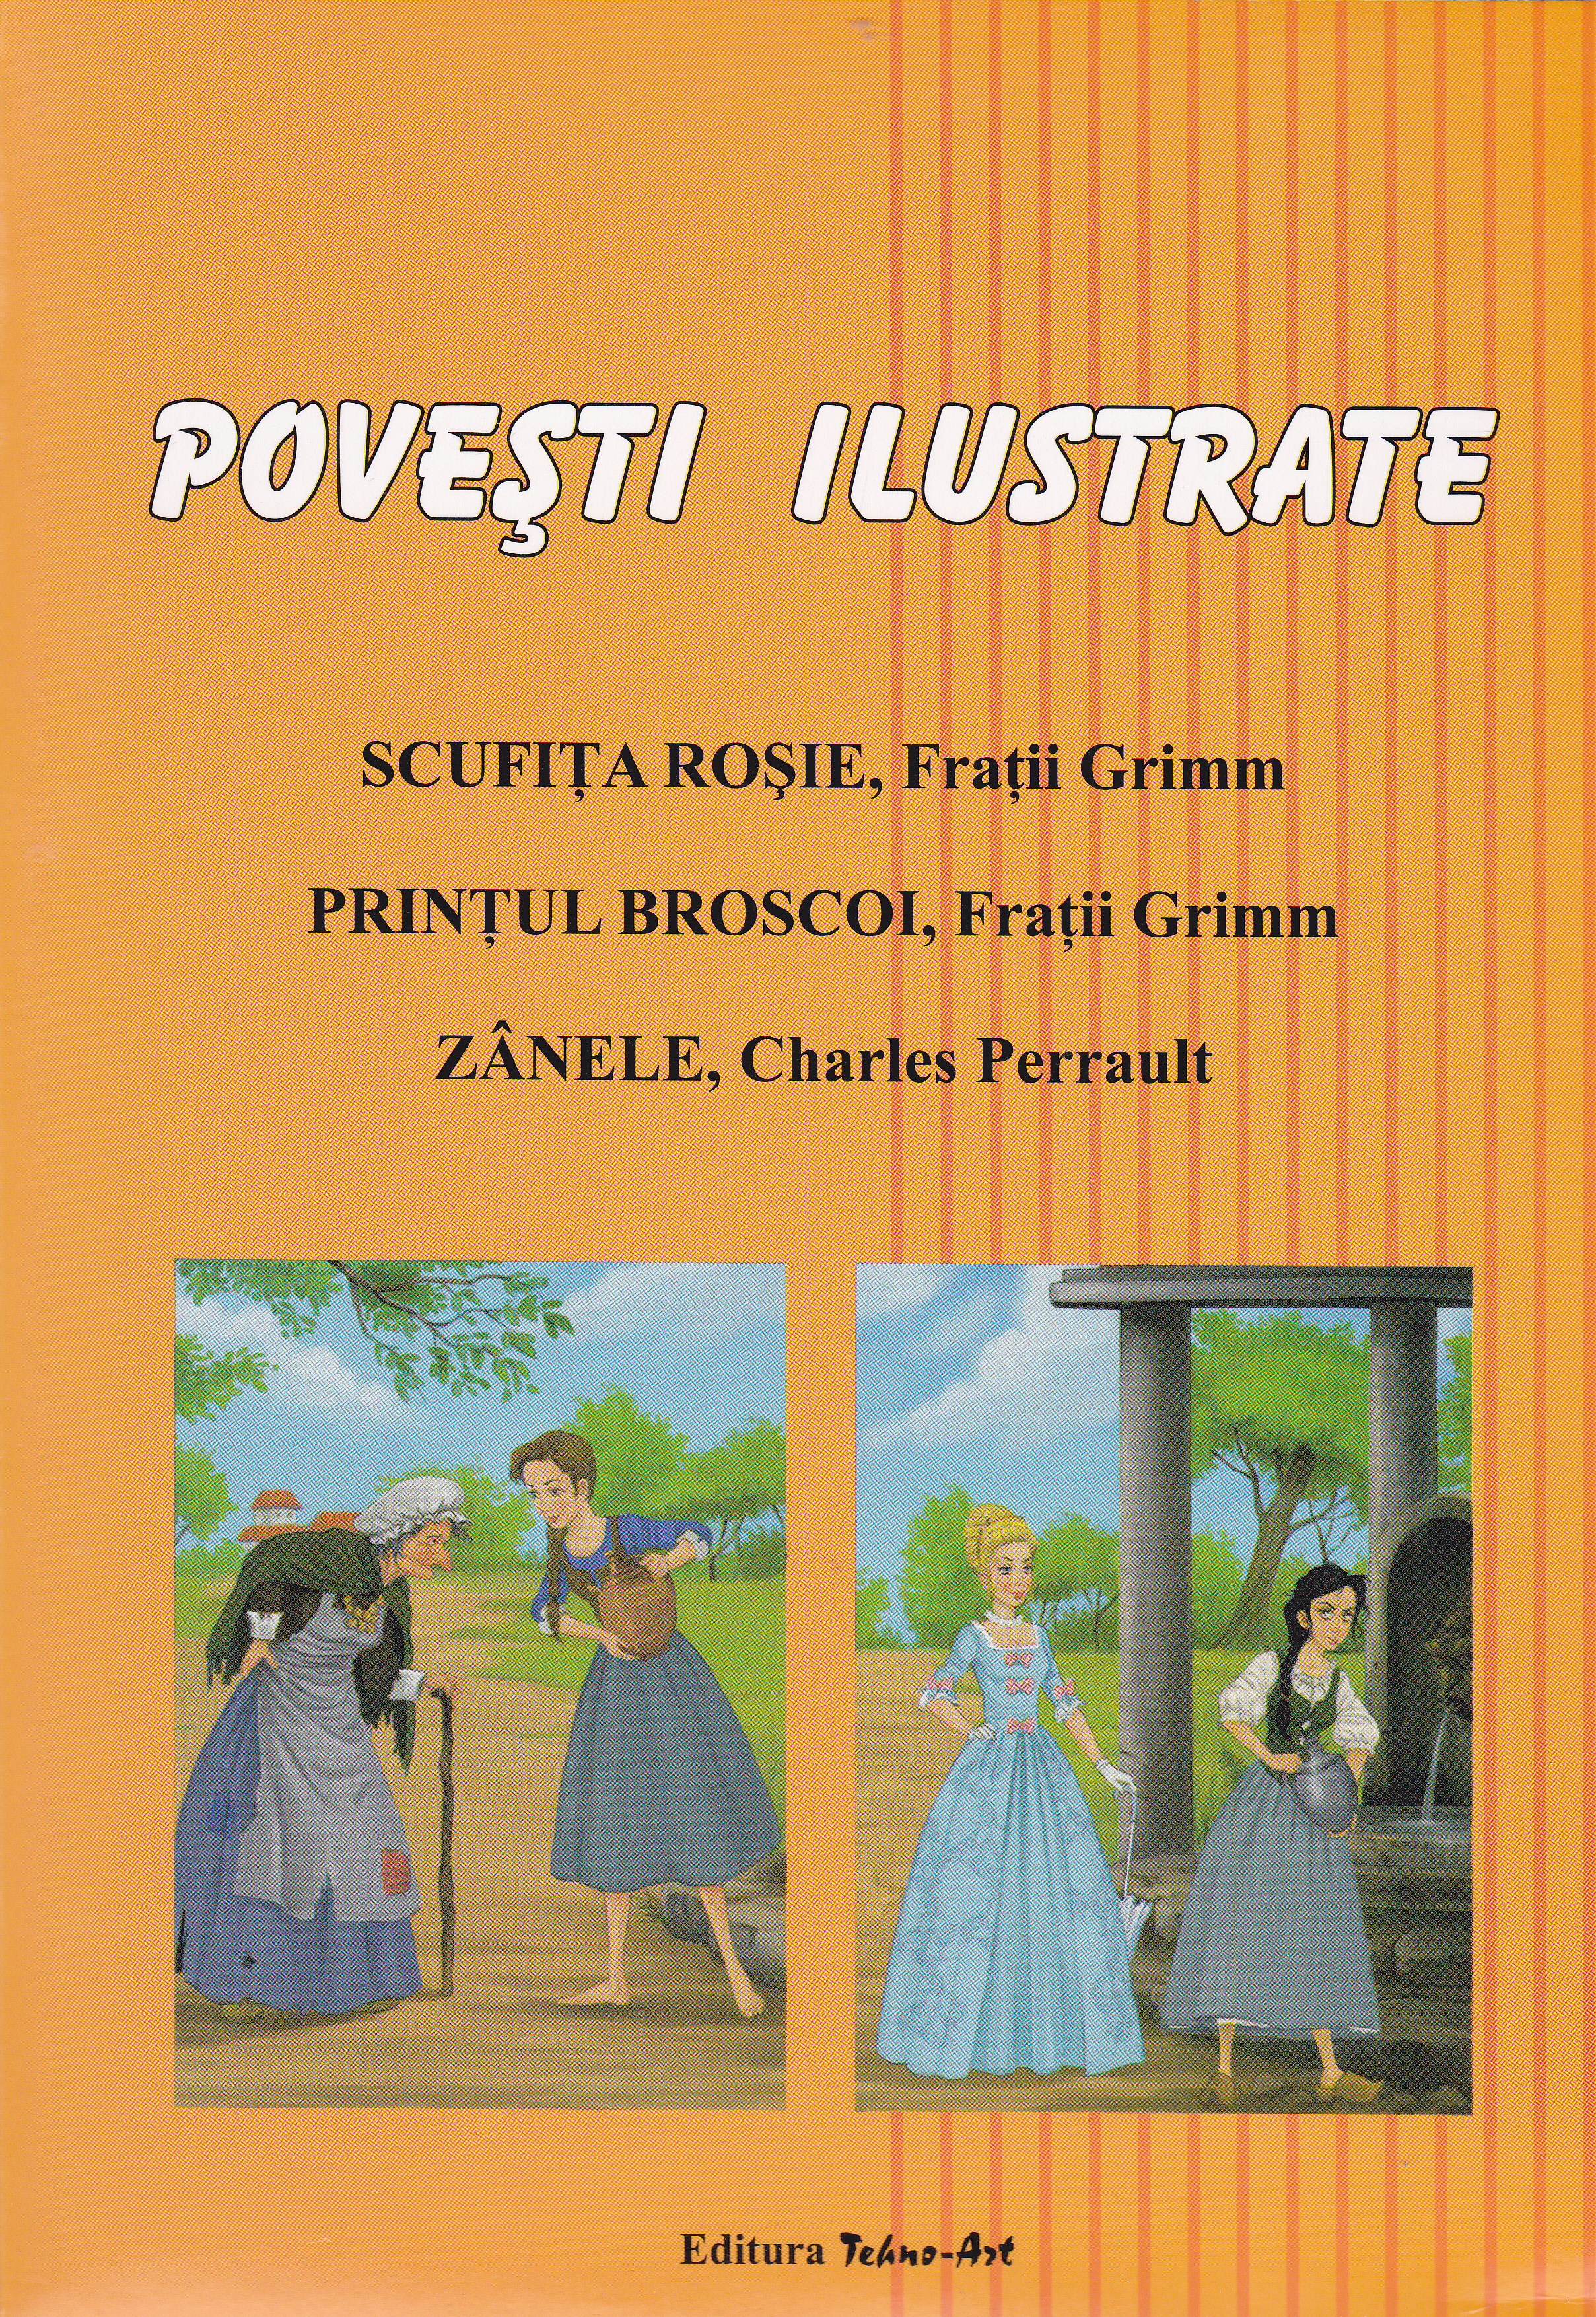 Povesti ilustrate: Scufita Rosie, Printul Broscoi, Zanele - Adrian Cerchez